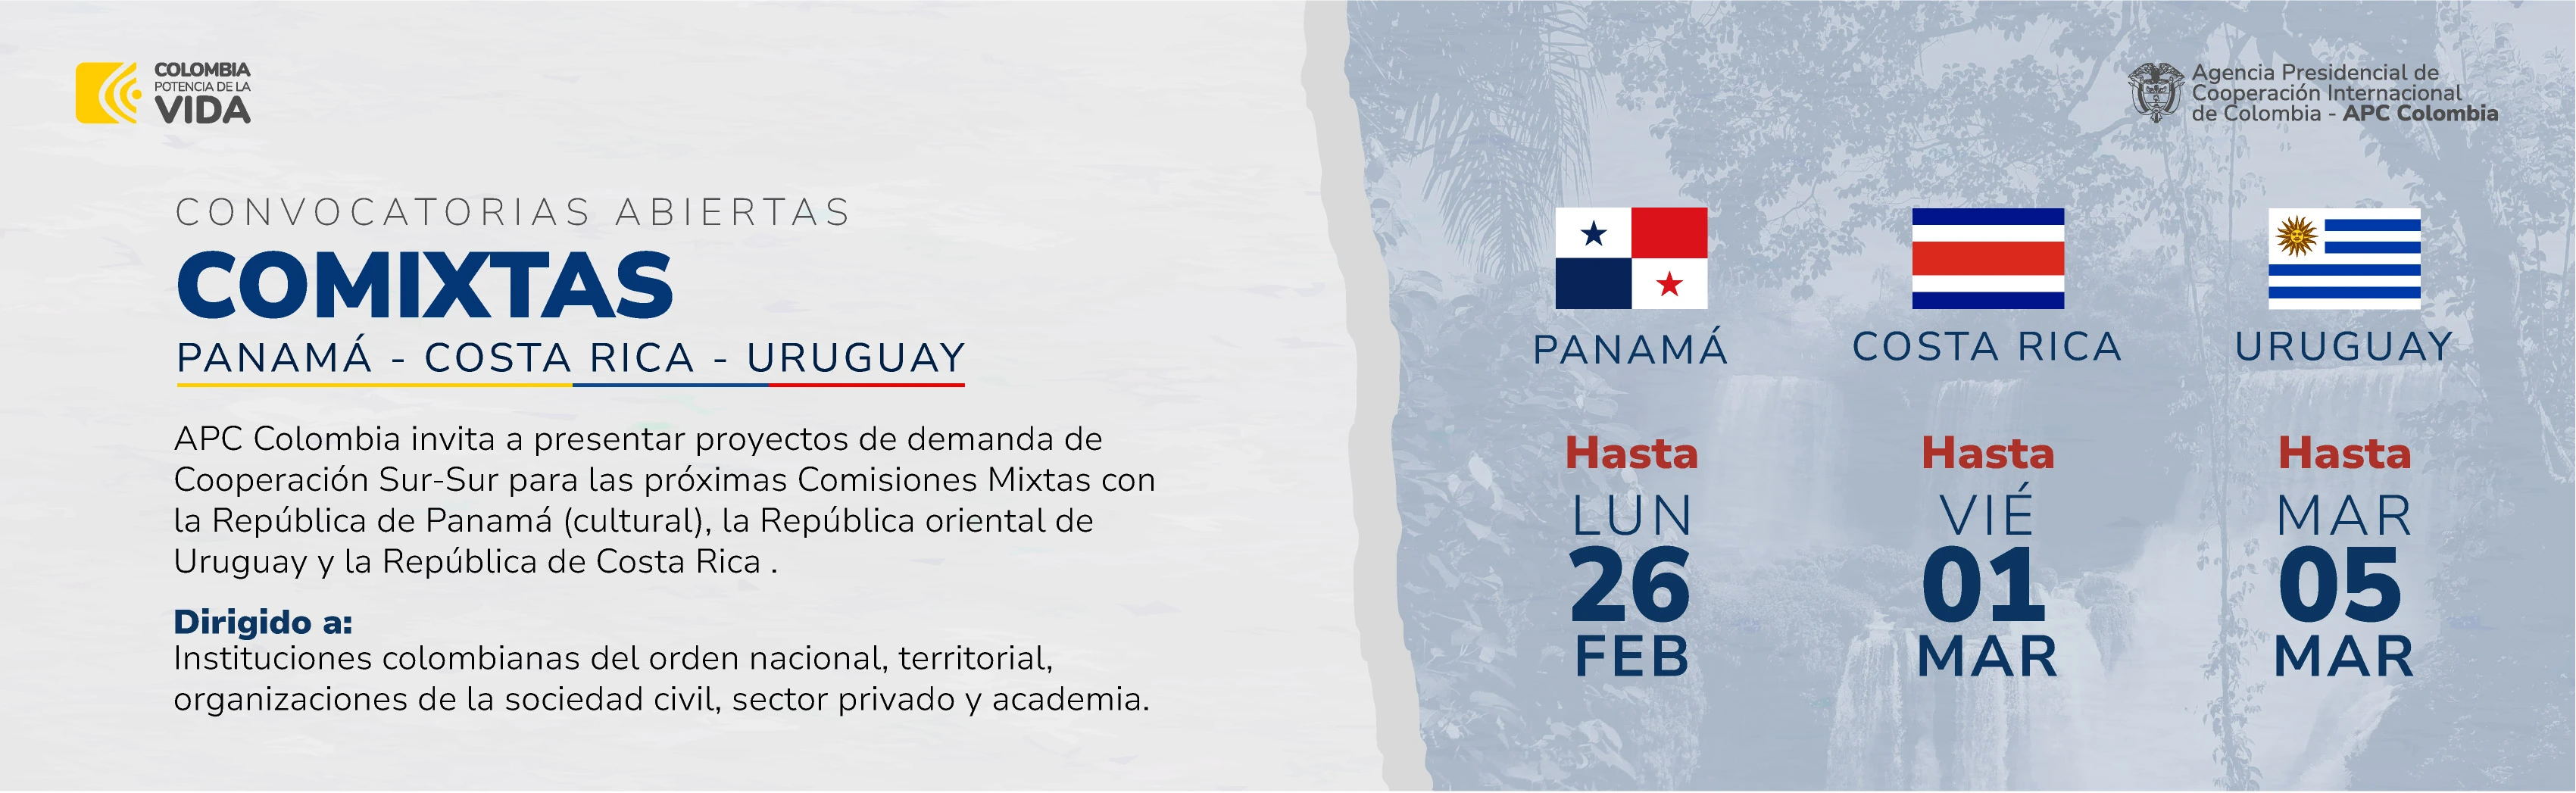 Convocatoria abierta para presentar proyectos en las Comixtas entre Colombia y Costa Rica, Panamá y Uruguay